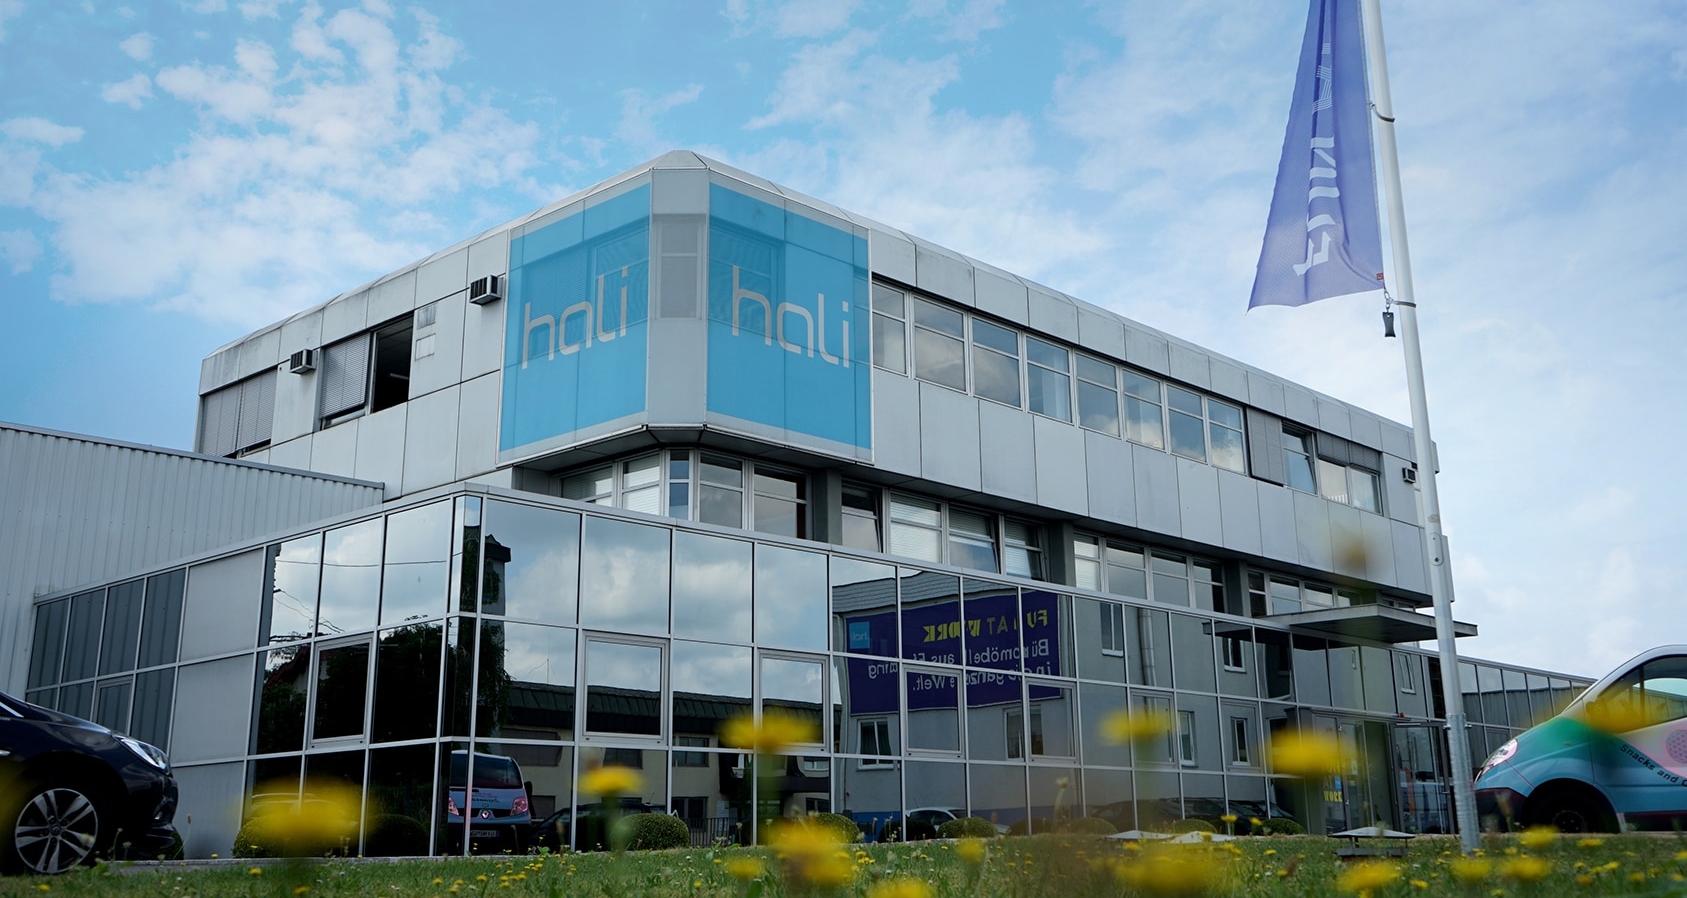 bild der Firmenzentrale hali GmbH in Eferding.